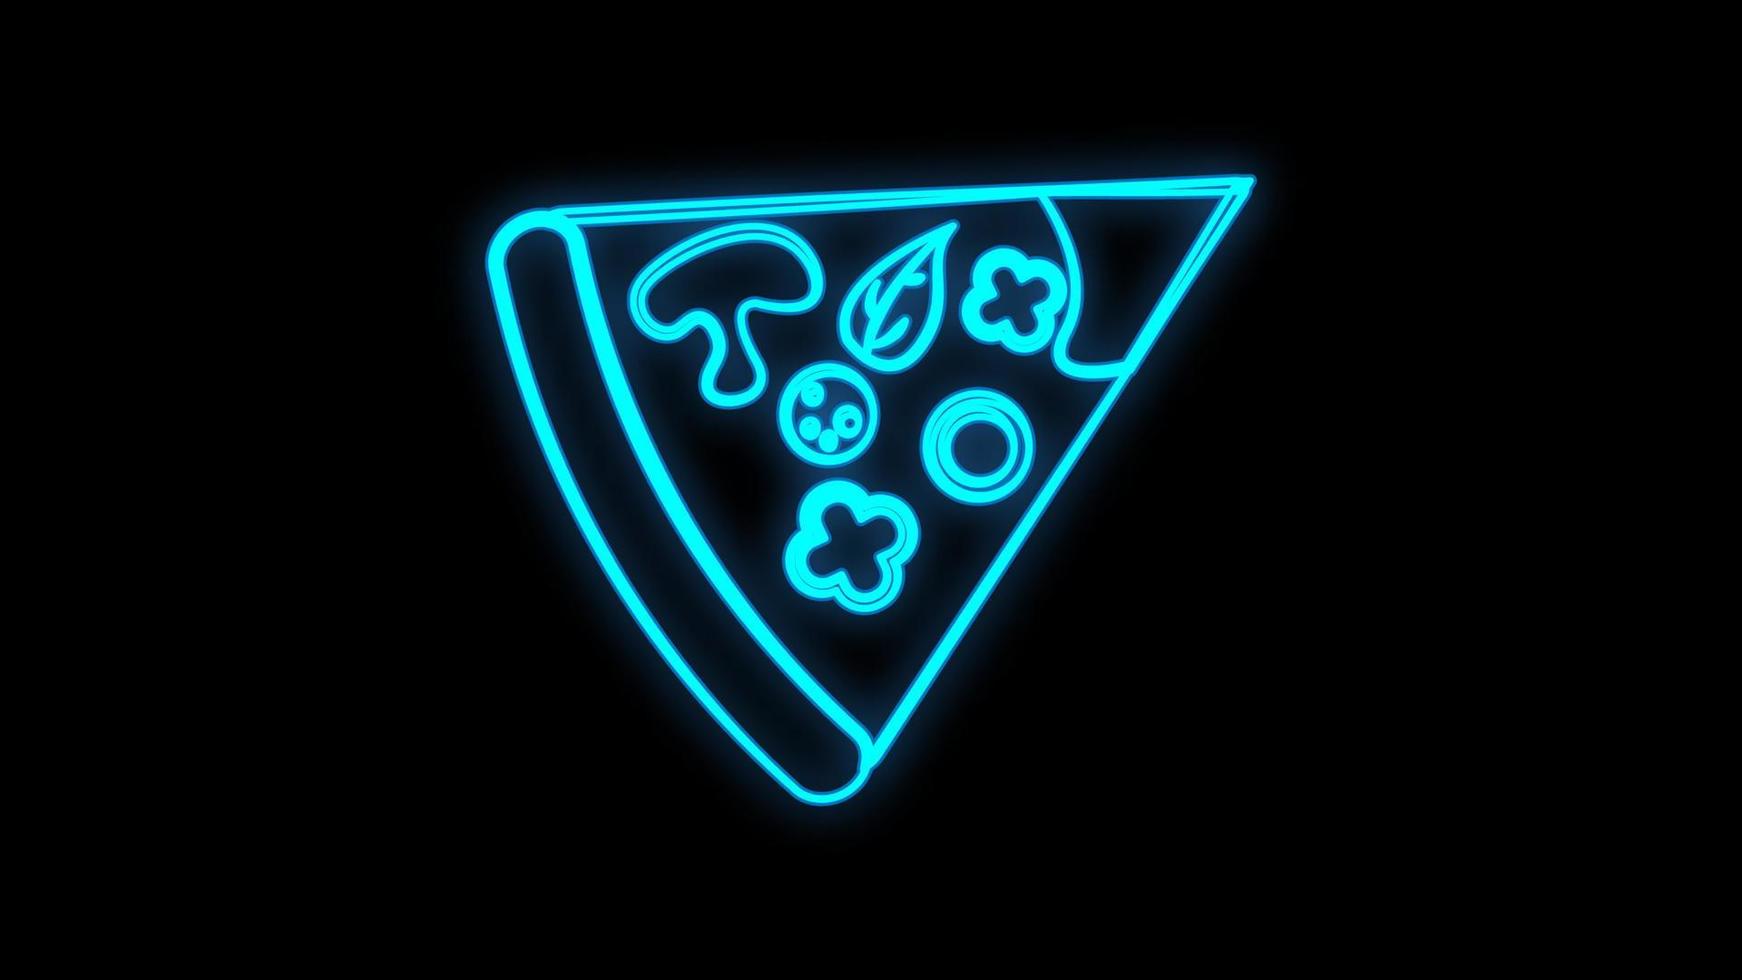 Pizza-Logo, Emblem. pizza-leuchtreklame, helles schild, lichtbanner. Neonschild vektor